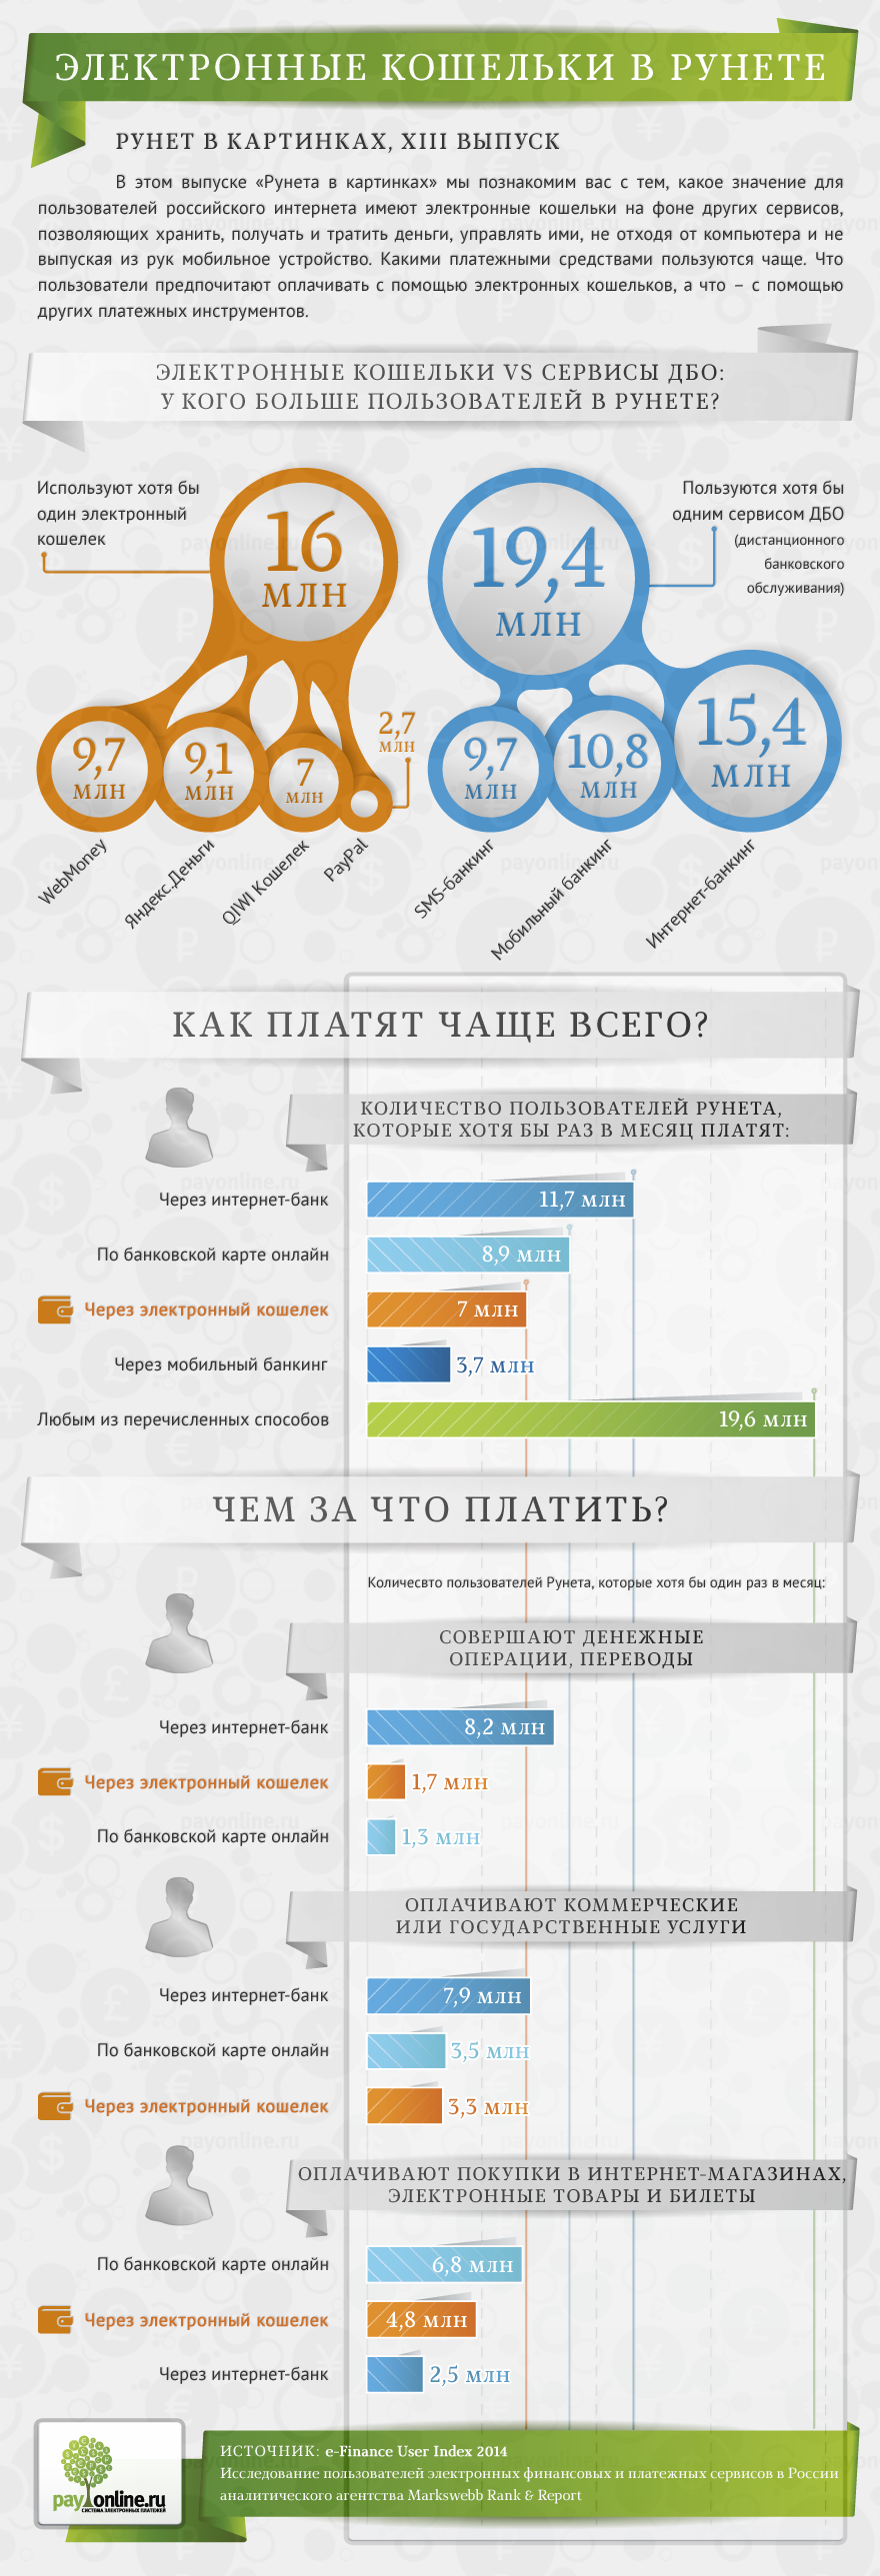 Какие основные интернет сервисы используются в рунете. Инфографика рунет. Кошелек инфографика. Электронный кошелек. Личный кабинет инфографика.